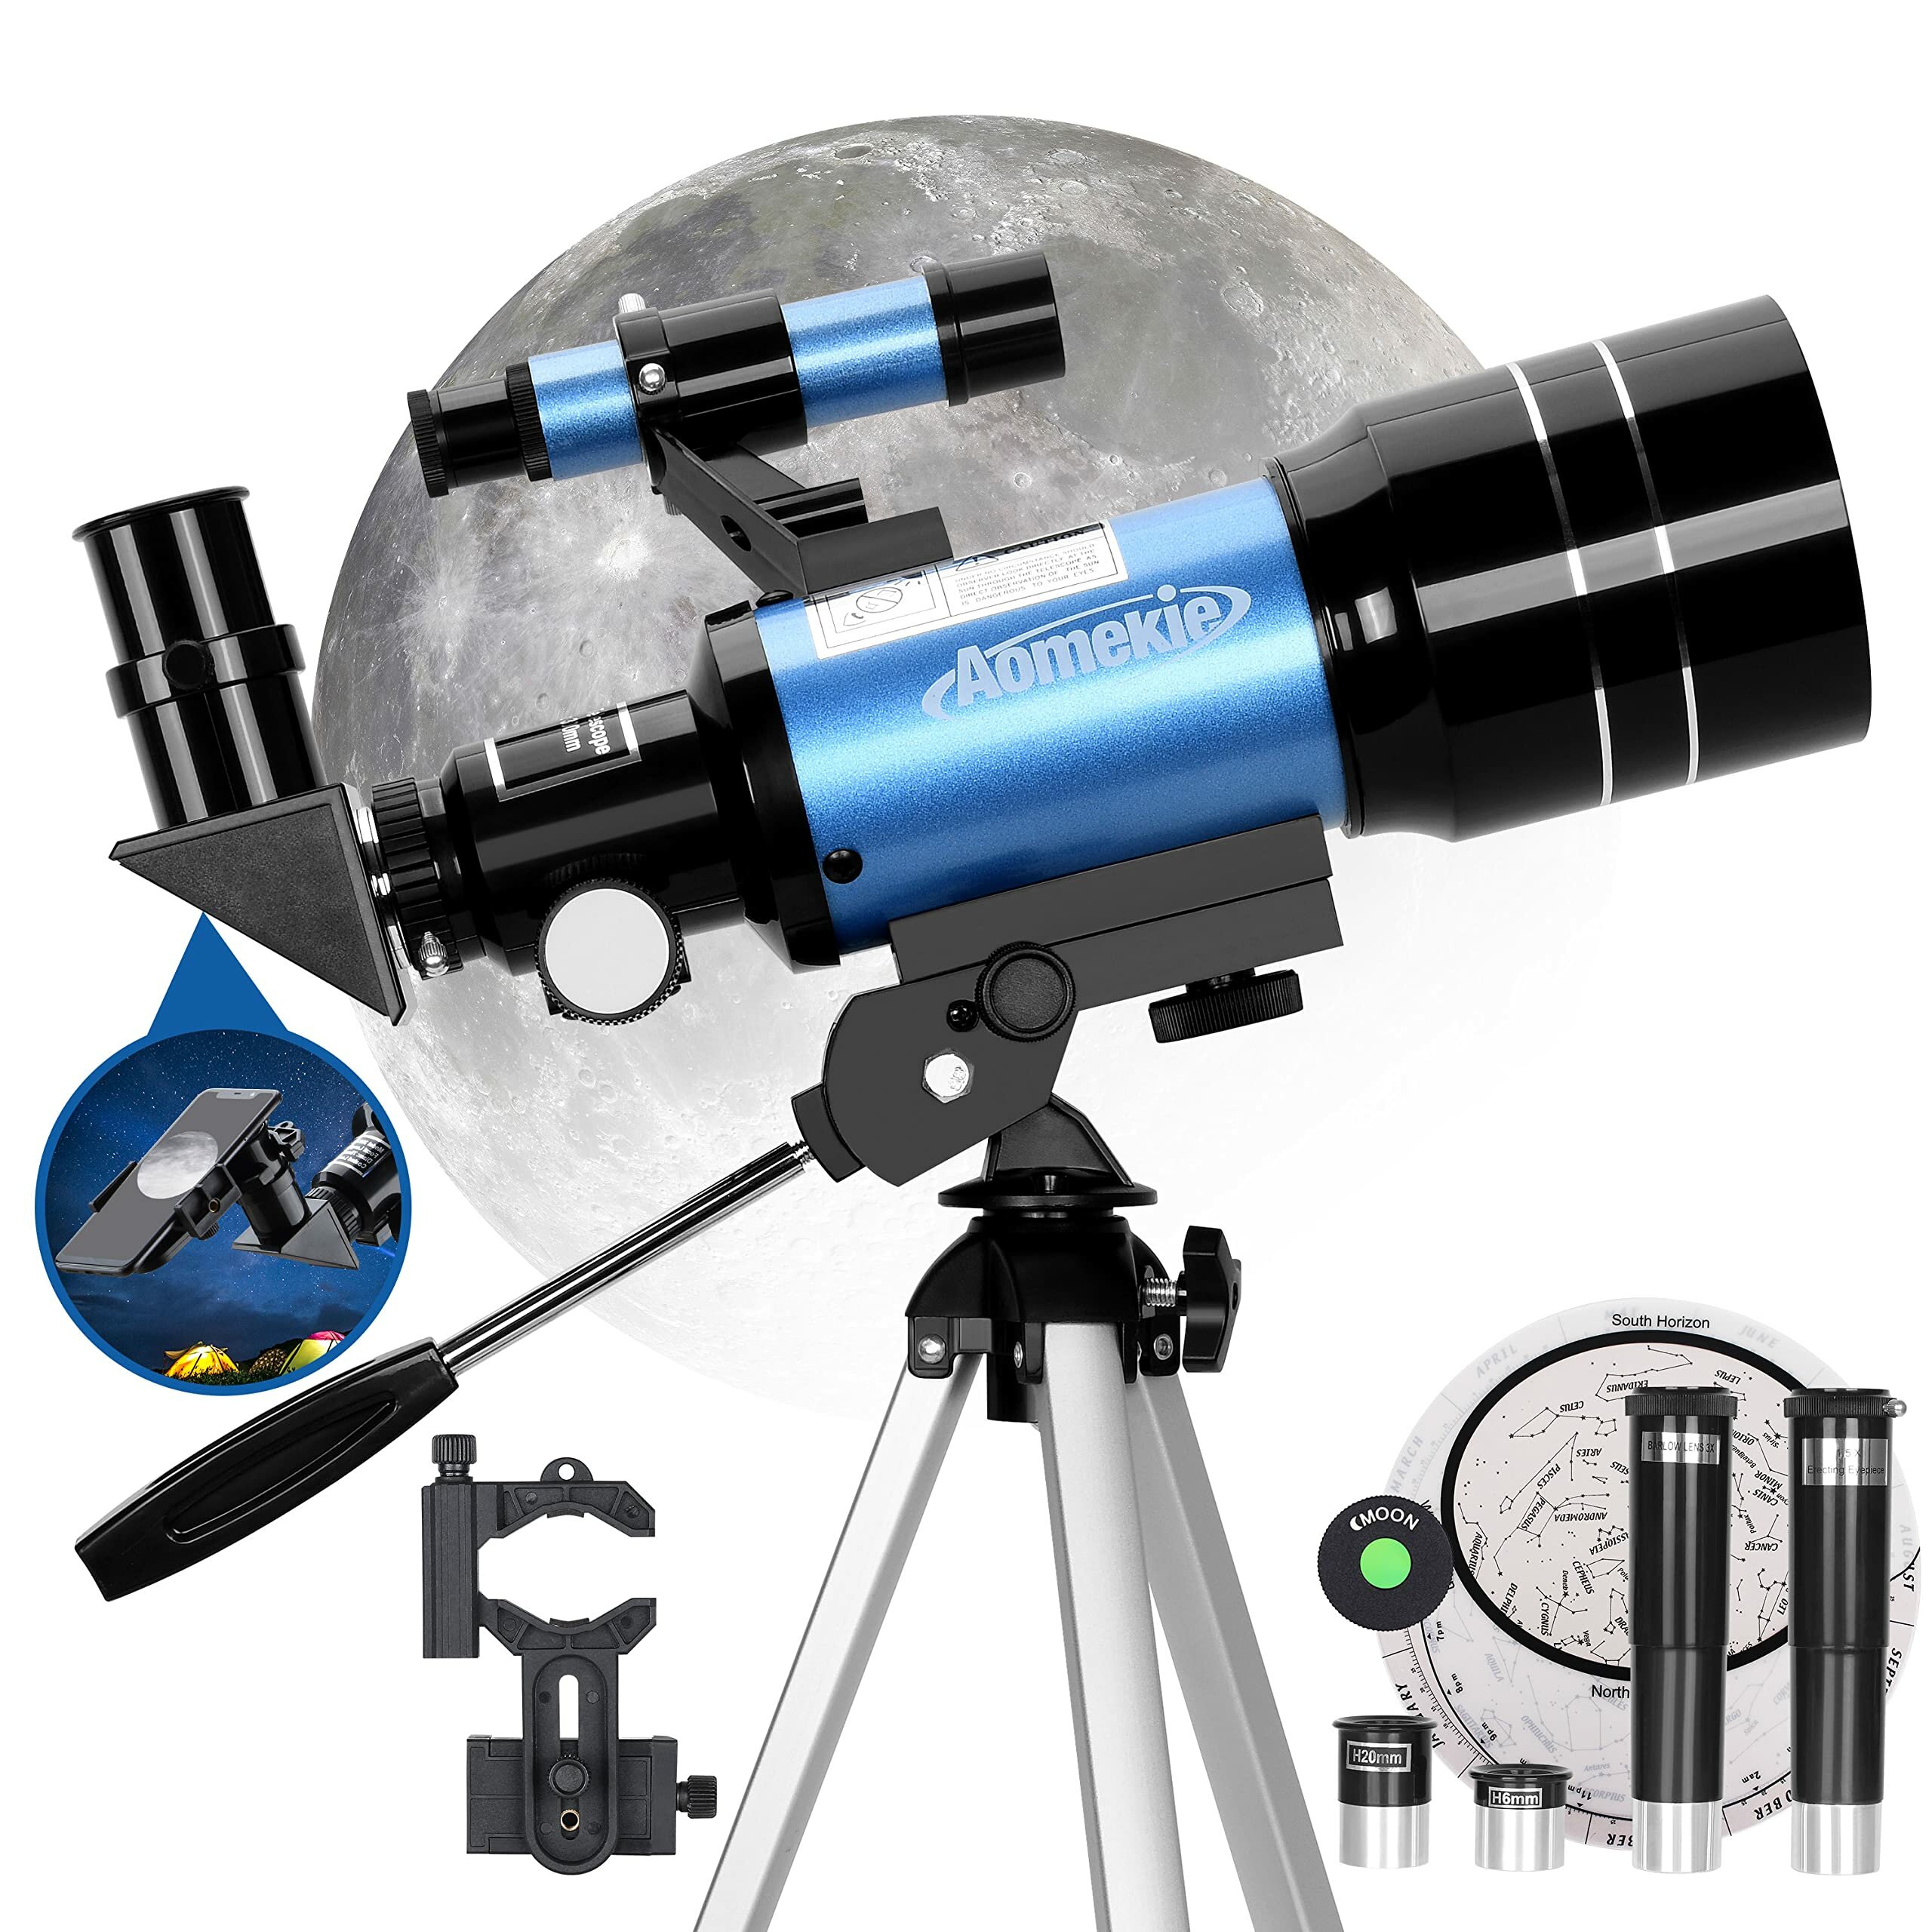 [US Direct] Astronomický ďalekohľad AOMEKIE AO2001 70 mm pre deti 150X Výkonný astronomický ďalekohľad s adaptérom na smartfón,tripoďom,Barlowovým objektívom a hľadačom pre začiatočníkov a záujemcov